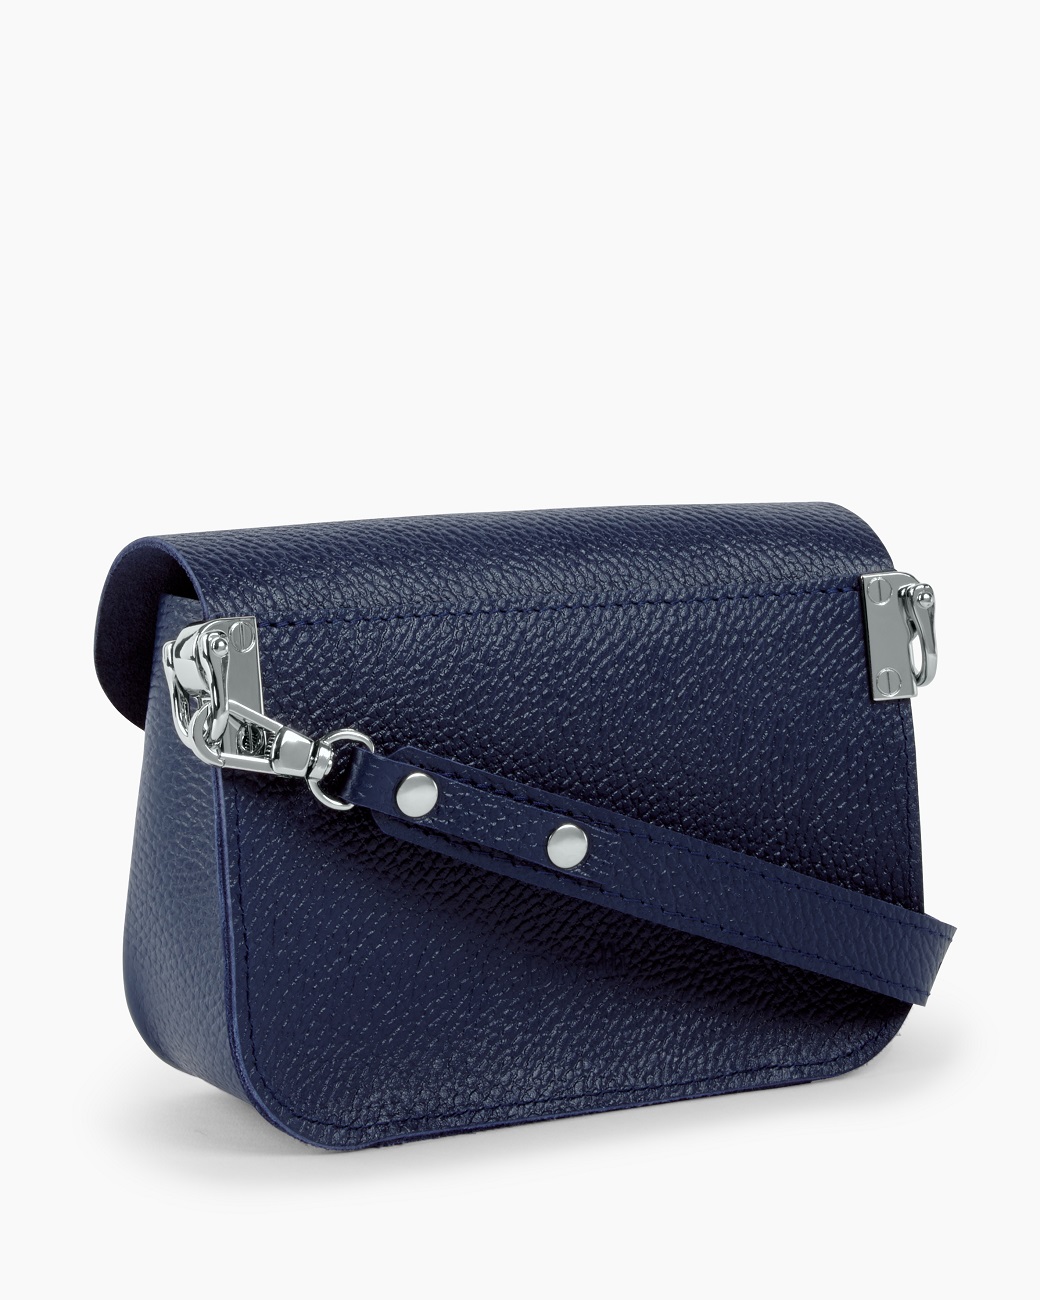 Женская поясная сумка из натуральной кожи синяя A001 sapphire mini grain